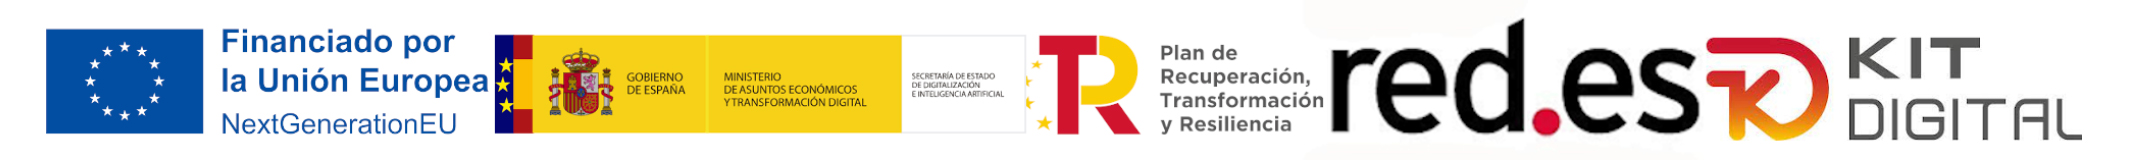 Logos de financiado por la union europea, gobierno de españa, plan de recuperacion transformacion y resilencia, red.es y kit digital